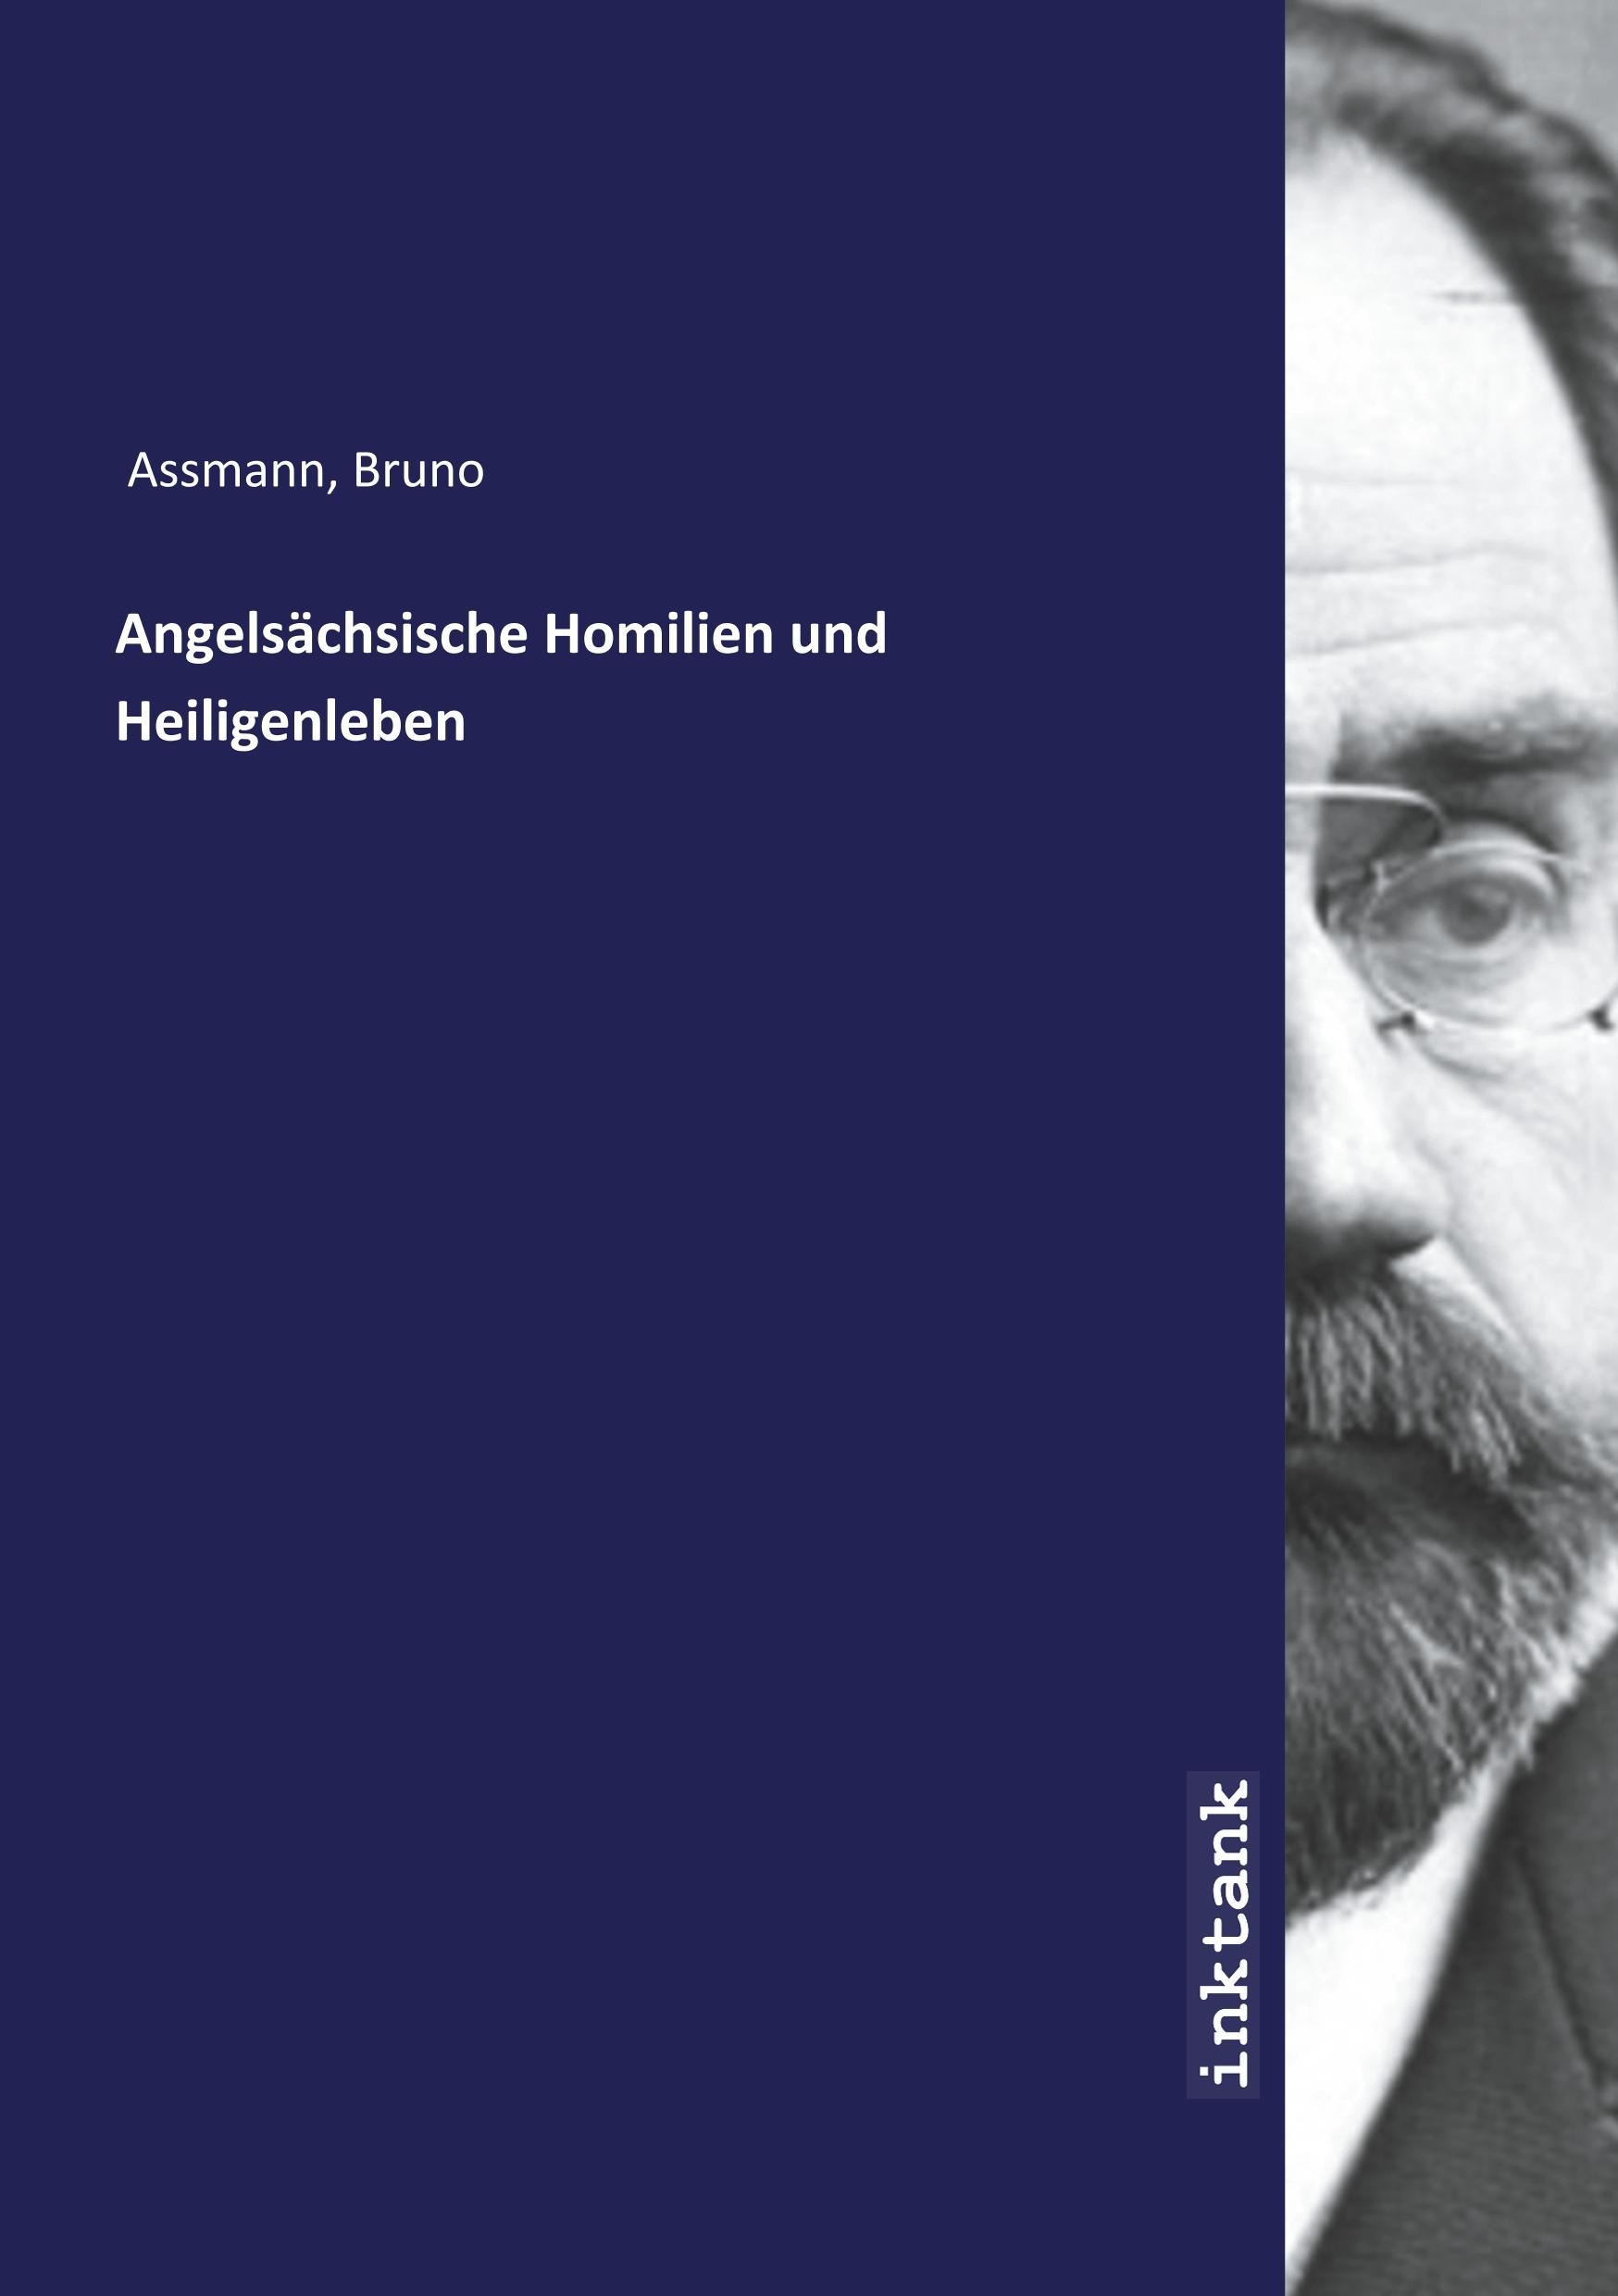 Angelsaechsische Homilien und Heiligenleben - Assmann, Bruno